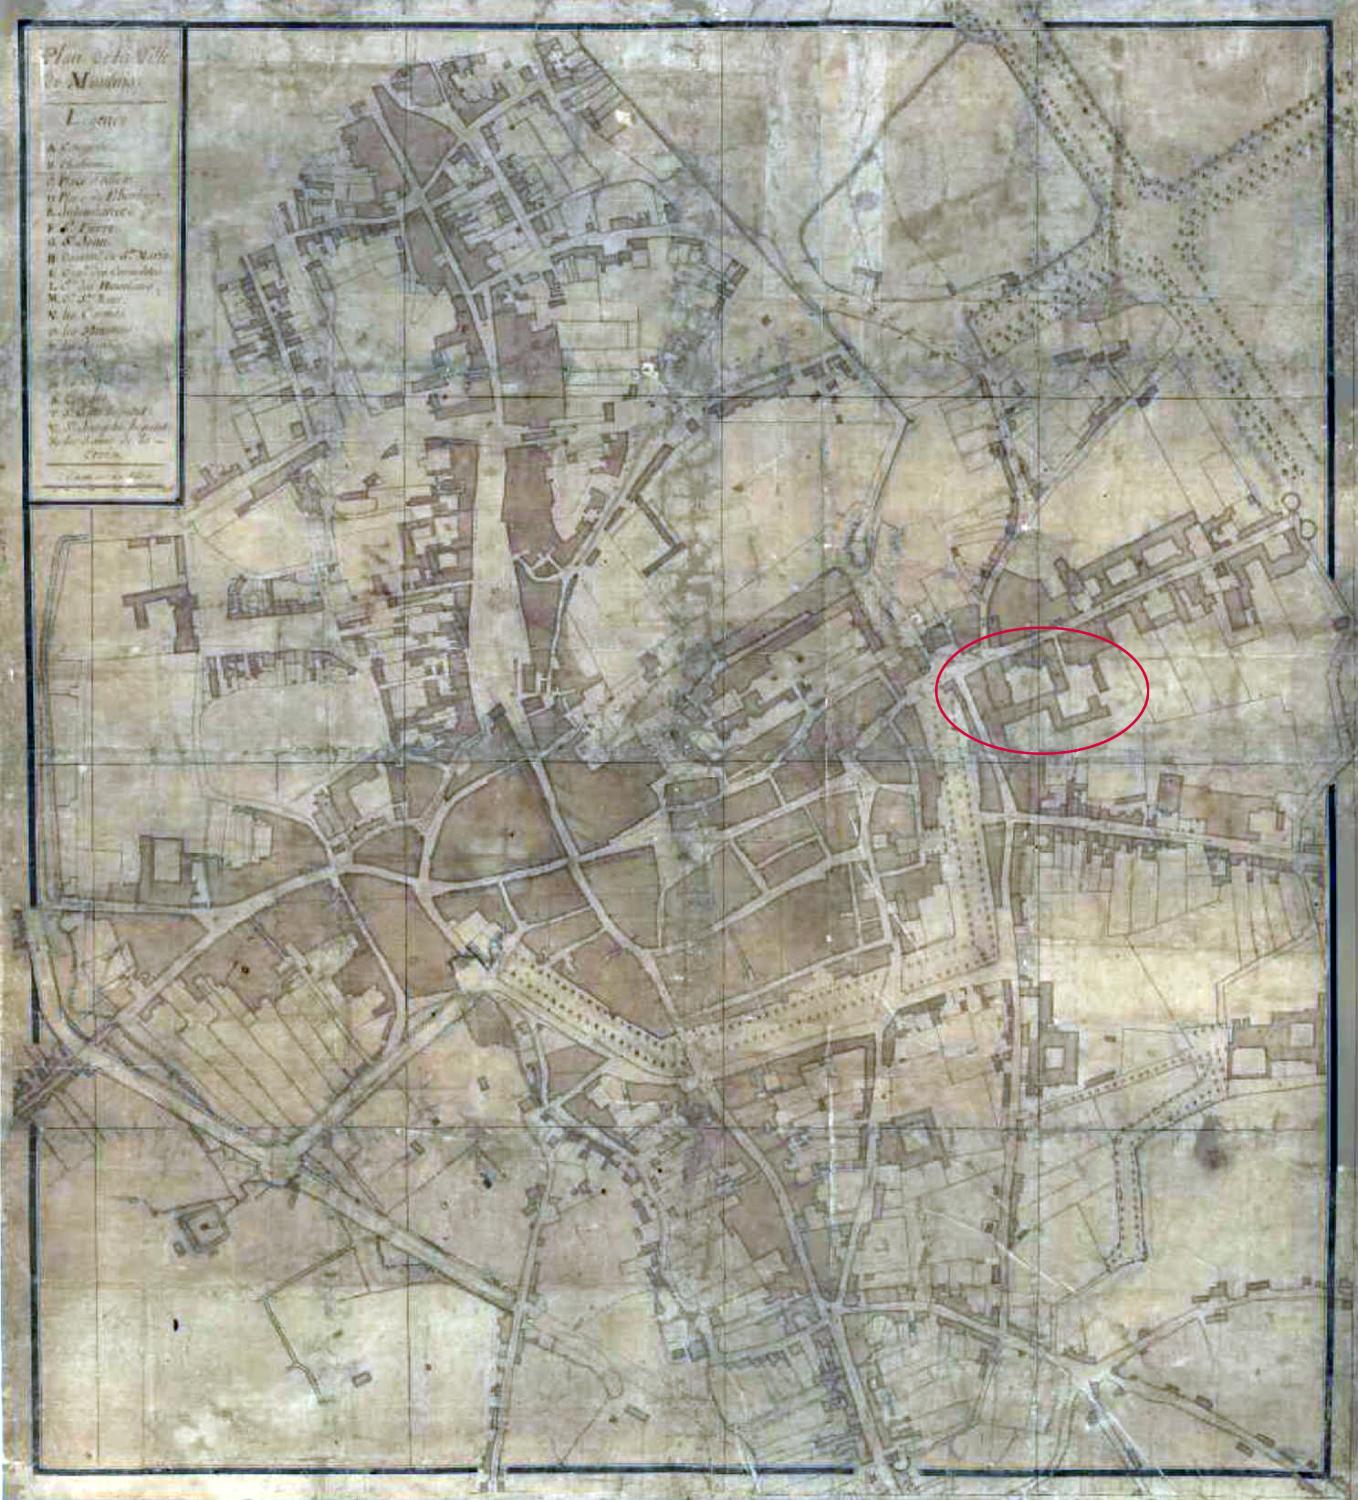 Plan de Moulins au 18e siècle (après 1756), avec localisation du collège (AD Allier, 1 C 22)